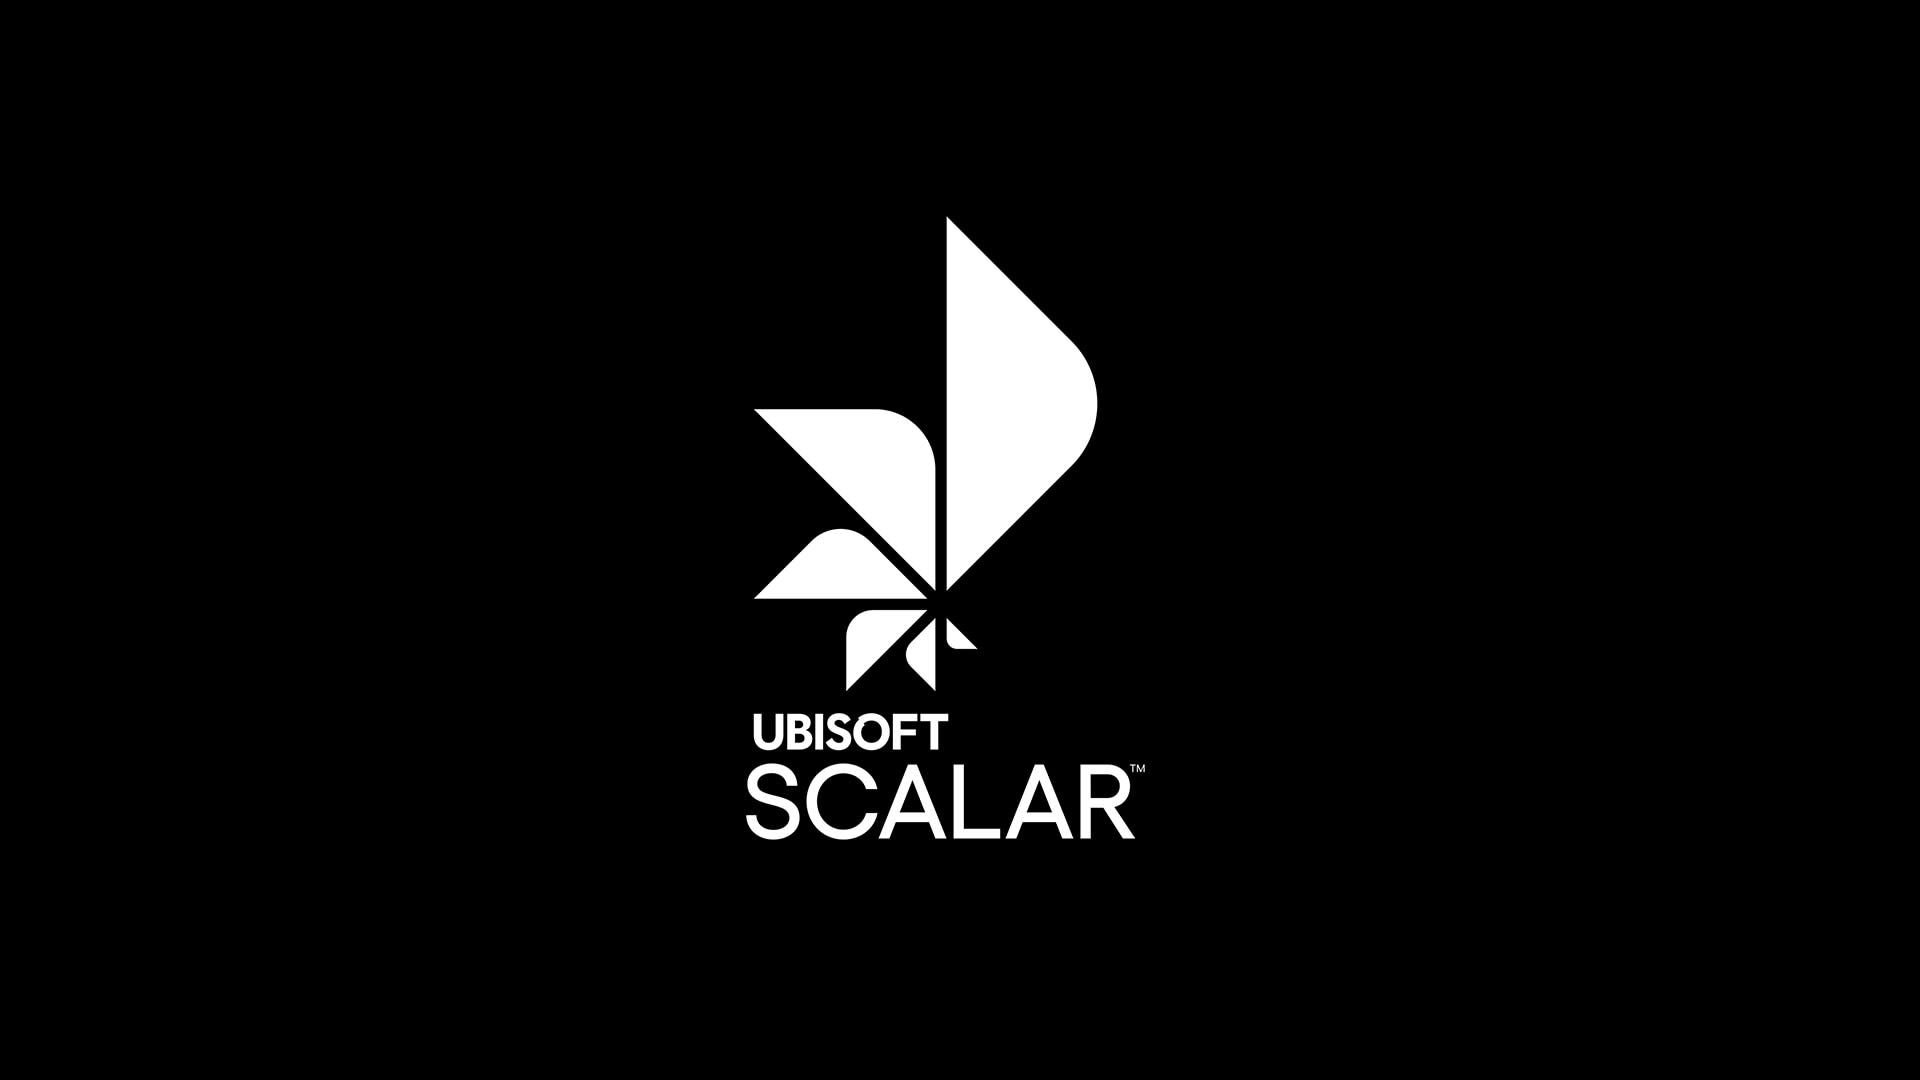 Ubisoft Presenta Ubisoft Scalar, Una Tecnología Innovadora Nativa De La Nube Que Cambia La Forma En Que Se Hacen Y Experimentan Los Juegos